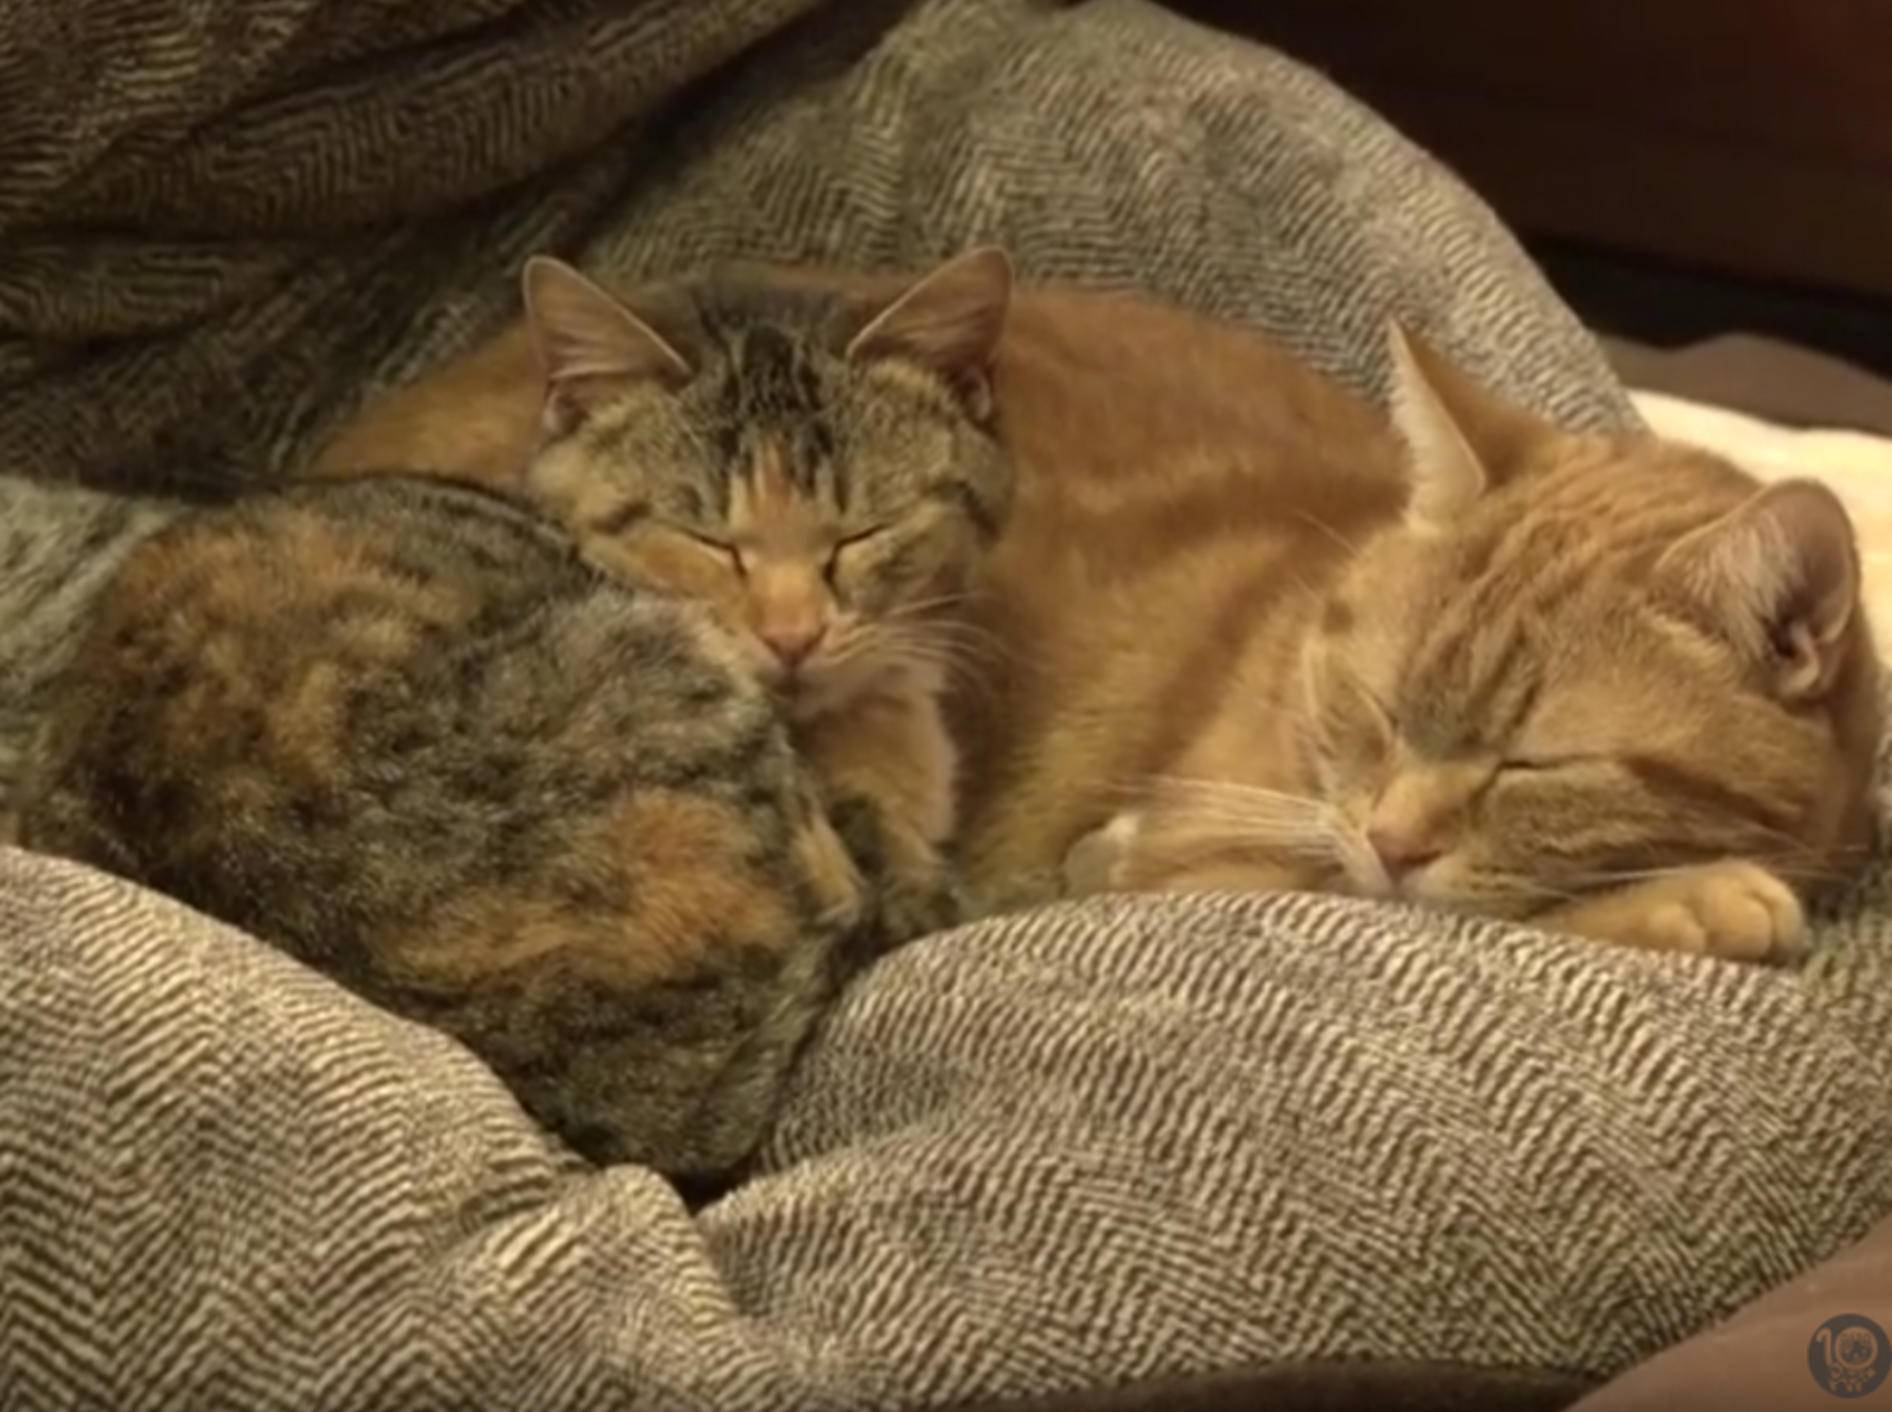 Katzen spielen Babysitter für kleines Adoptivkätzchen – YouTube / 10 Cats.